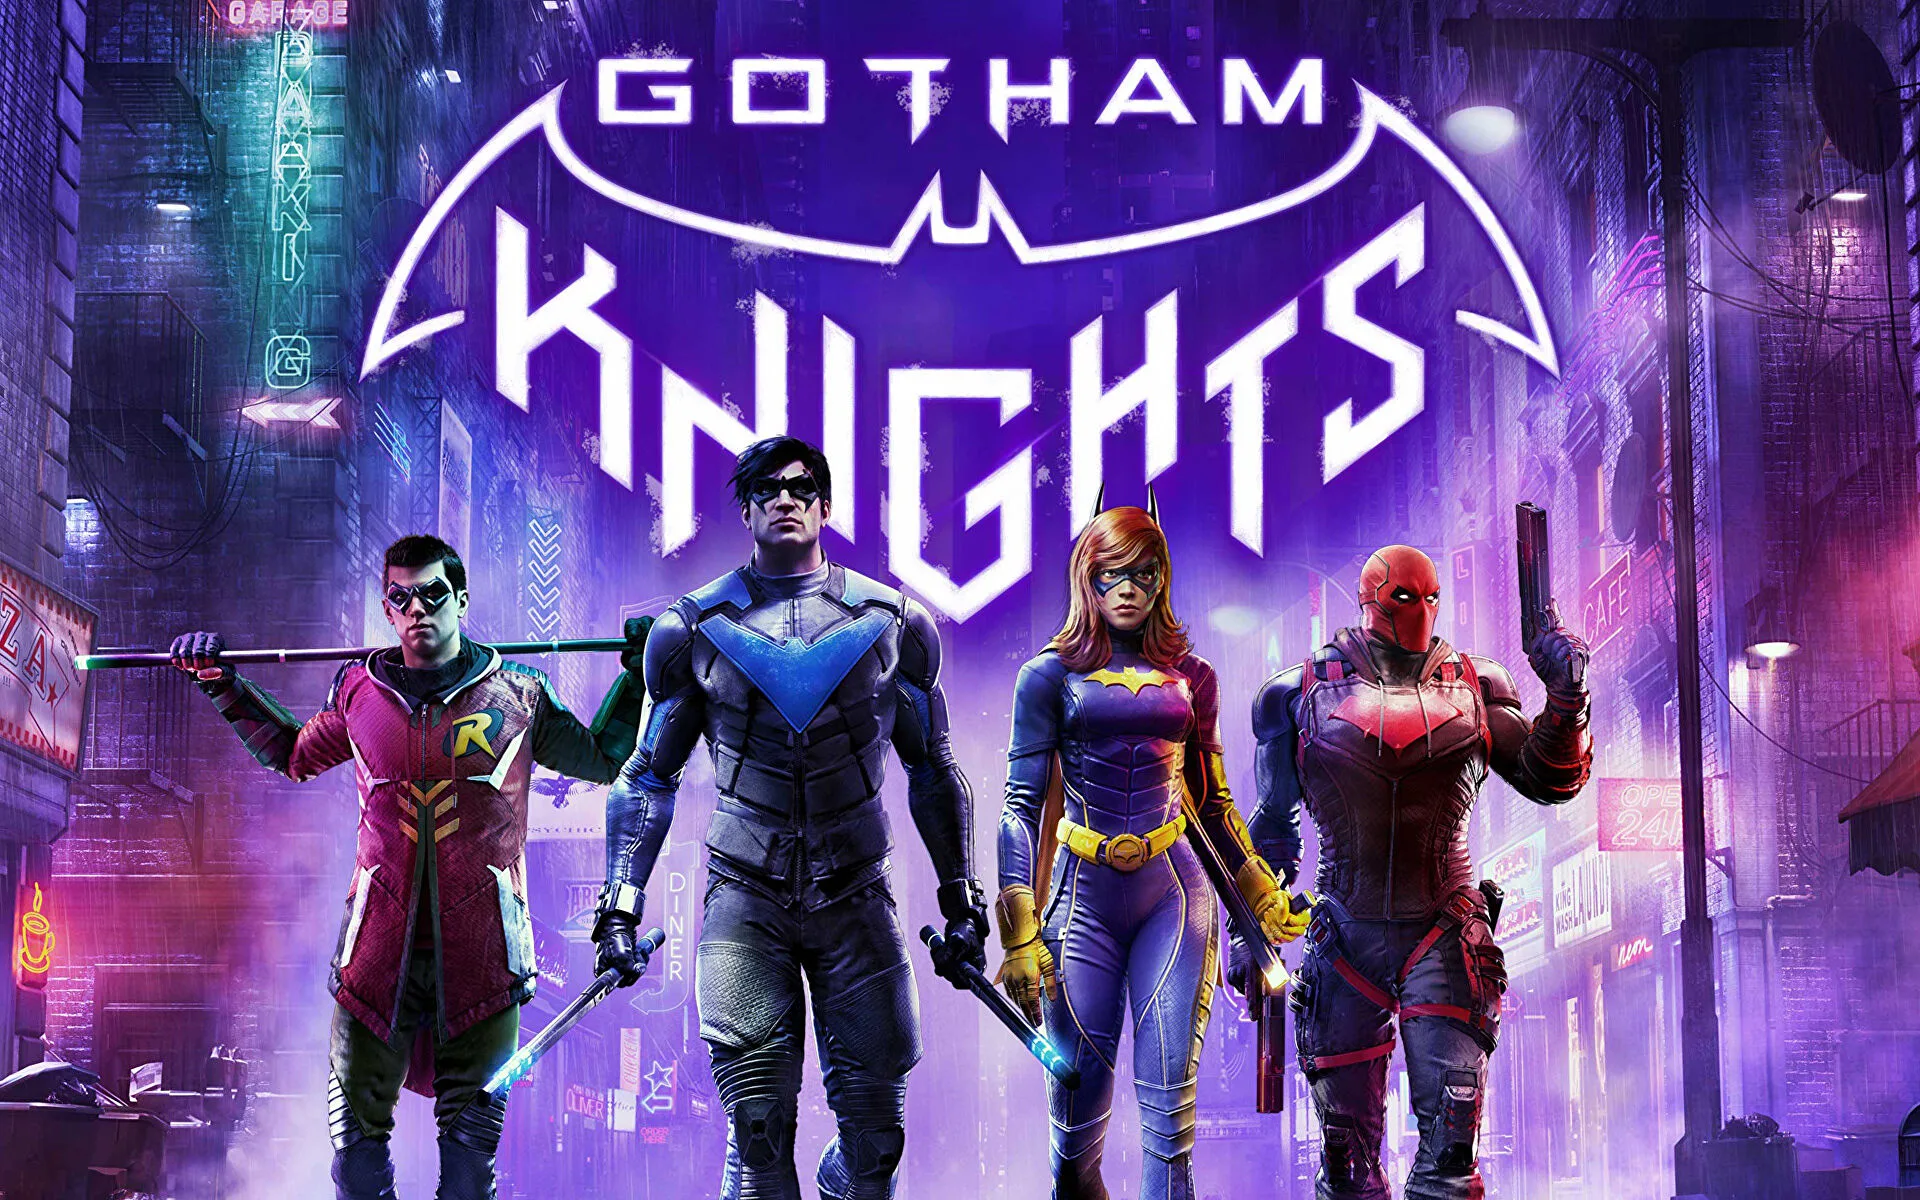 لعبة Gotham Knights لن تدعم سوى 30 اطار في الثانية فقط